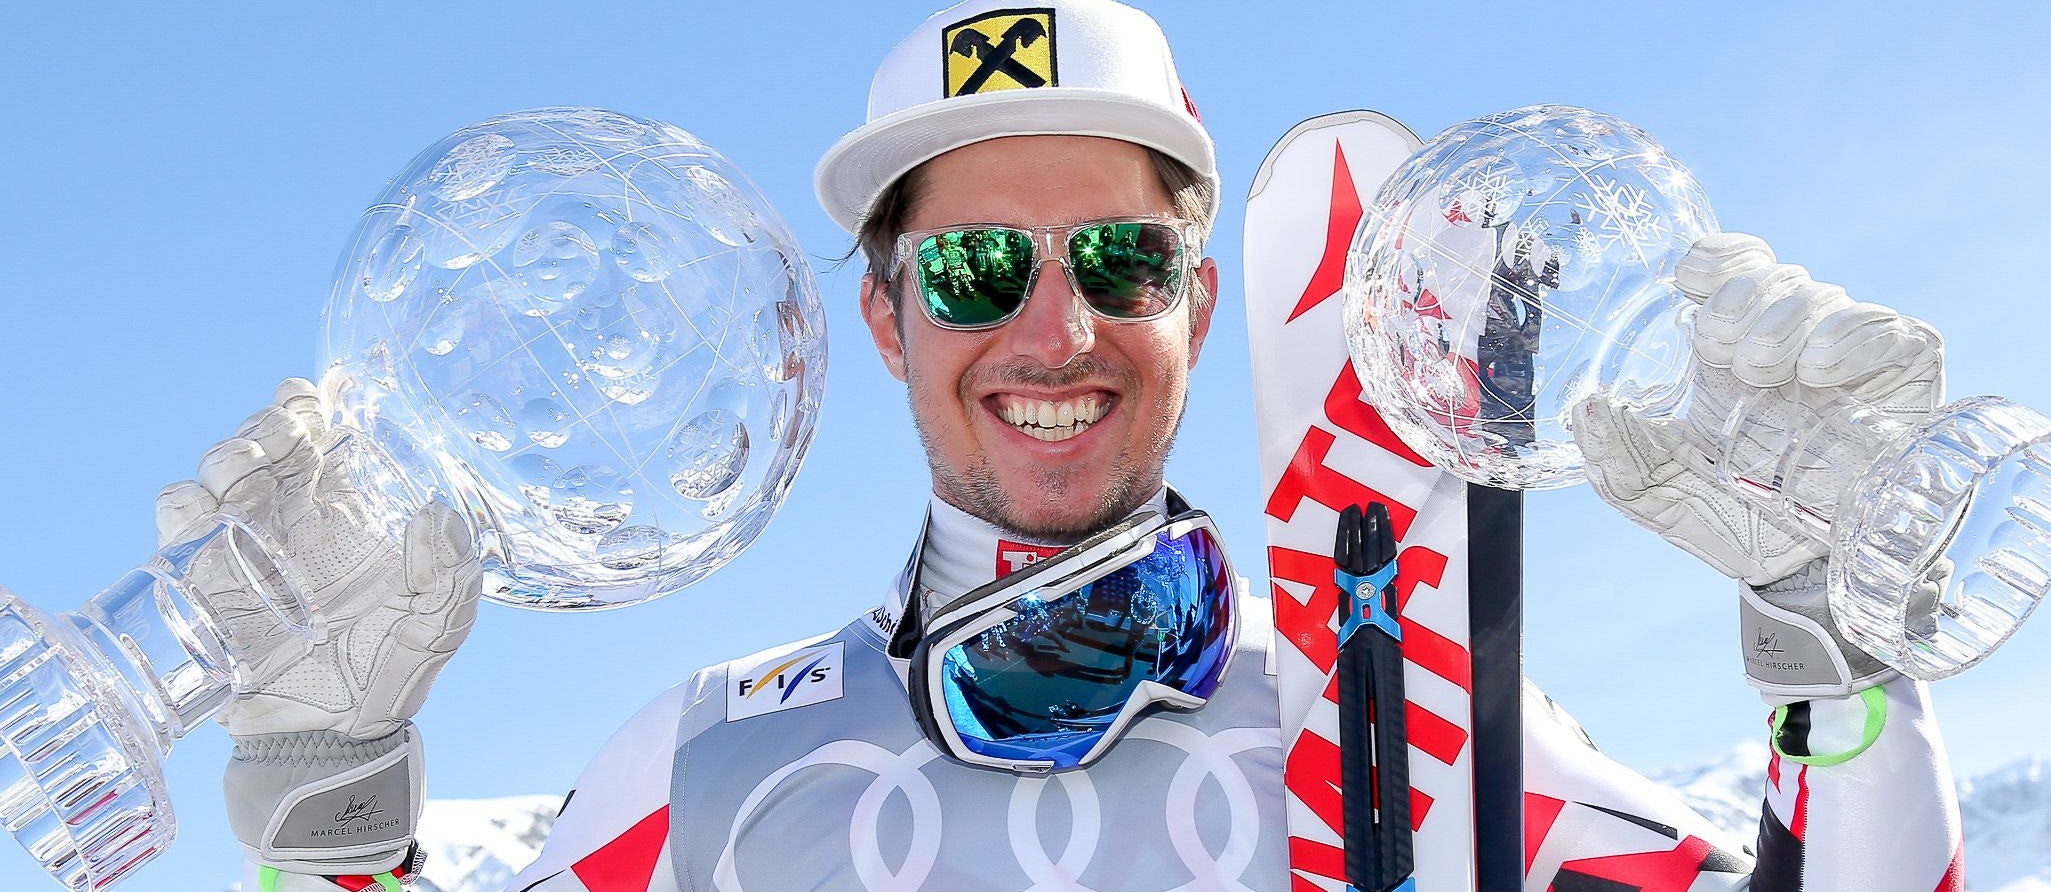 Sag niemals nie: Der Salzburger Marcel Hirscher, einer der erfolgreichsten Skifahrer aller Zeiten, kehrt nach seinem Rücktritt im Sommer 2019 auf die große Sportbühne zurück und wird künftig für die Niederlande auf die Jagd nach der Bestzeit gehen